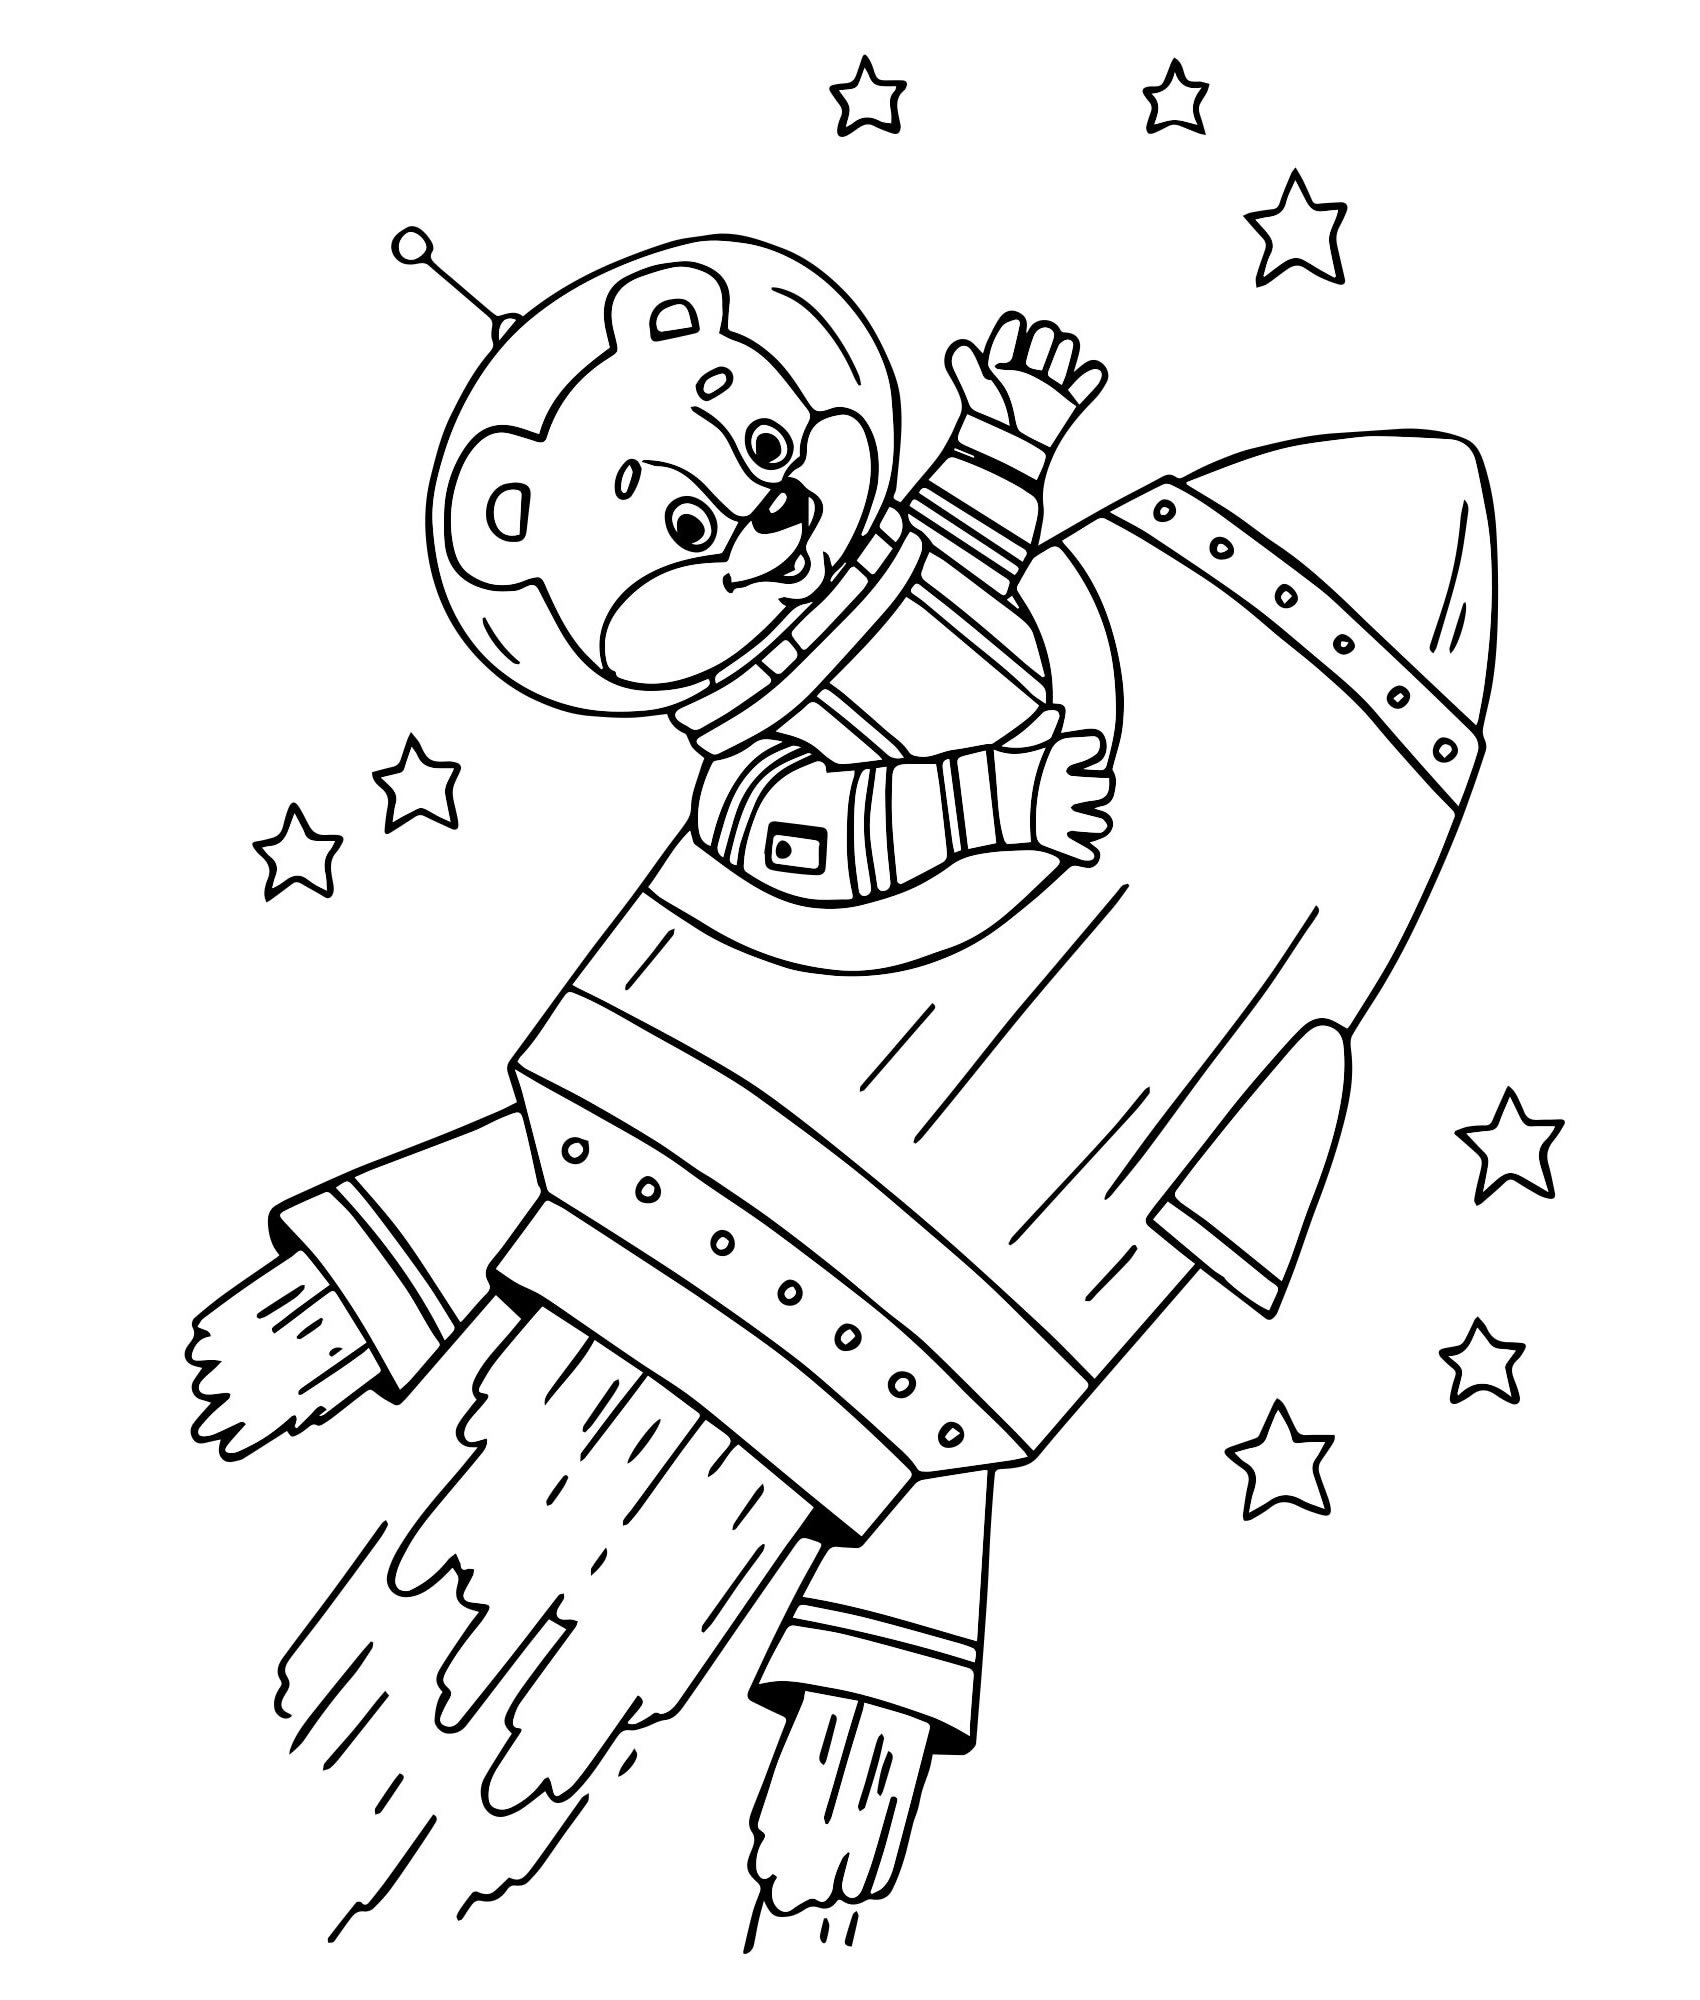 День космонавтики картинки раскраски. Раскраска. В космосе. Космонавт раскраска для детей. Раскраски ко Дню космонавтики. Космос раскраска для детей.